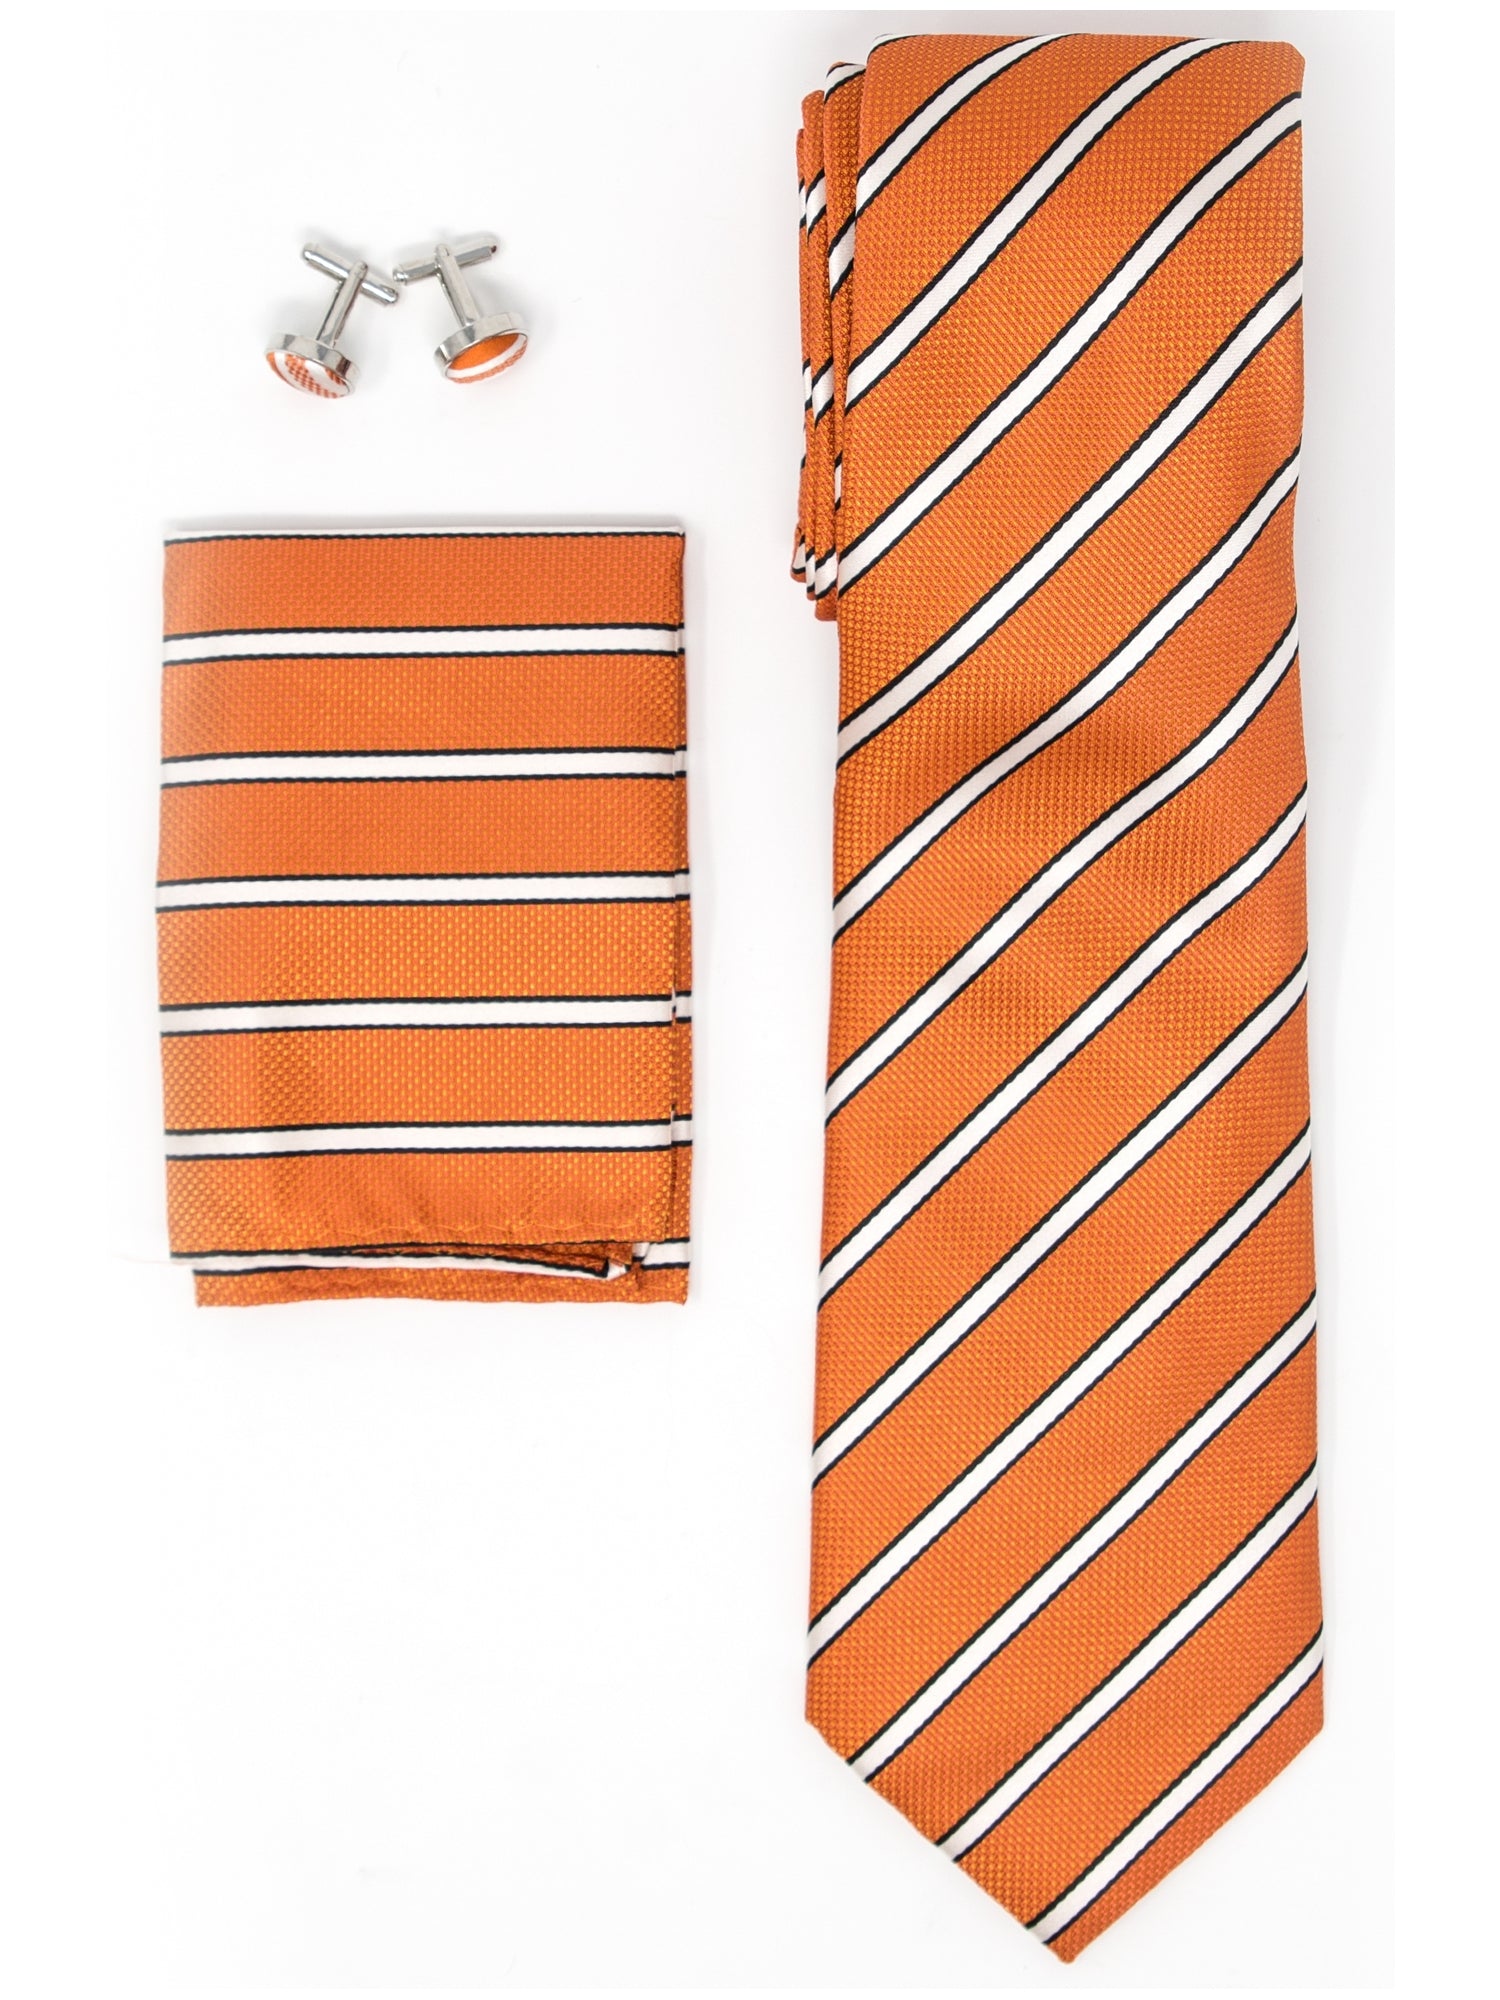 Men's Silk Neck Tie Set Cufflinks & Hanky Collection Neck Tie TheDapperTie Orange, White And Black Stripes Regular 